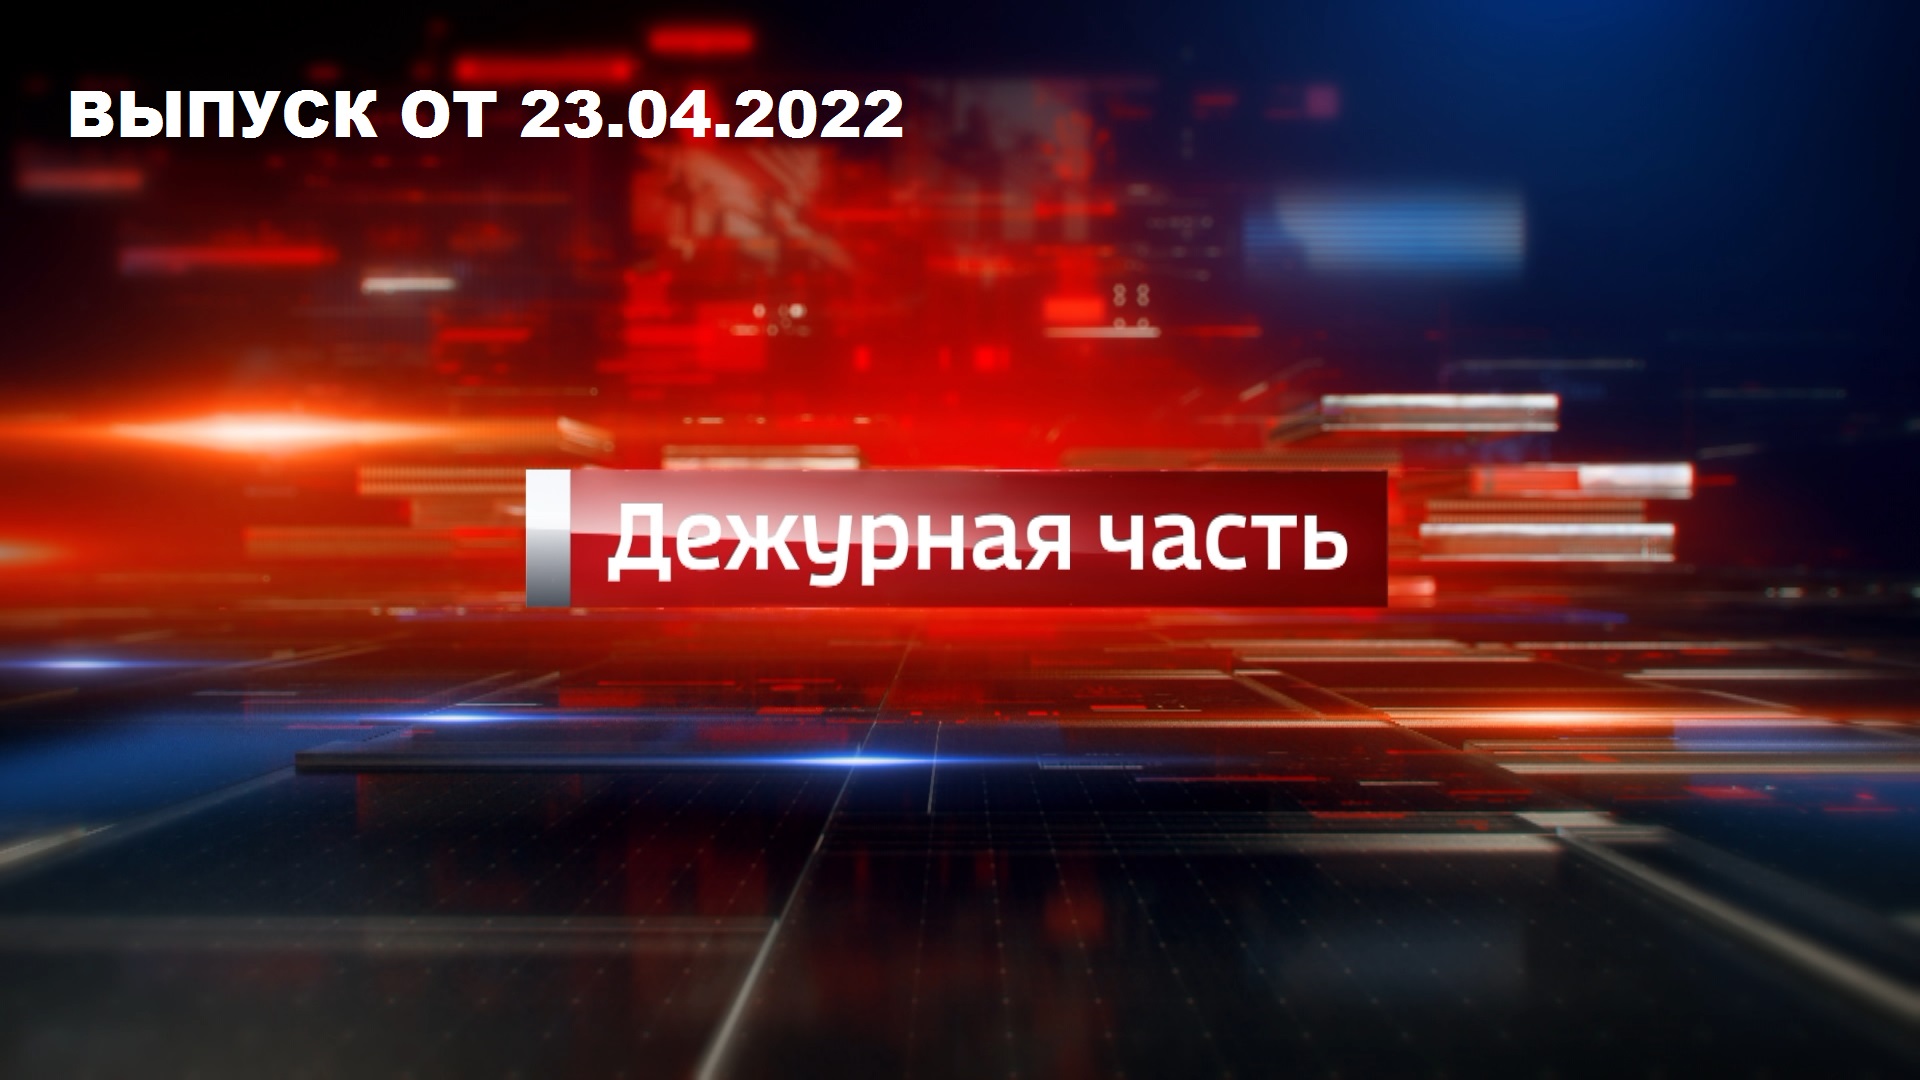 Вести. Дежурная часть — эфир от 23 апреля 2022 года